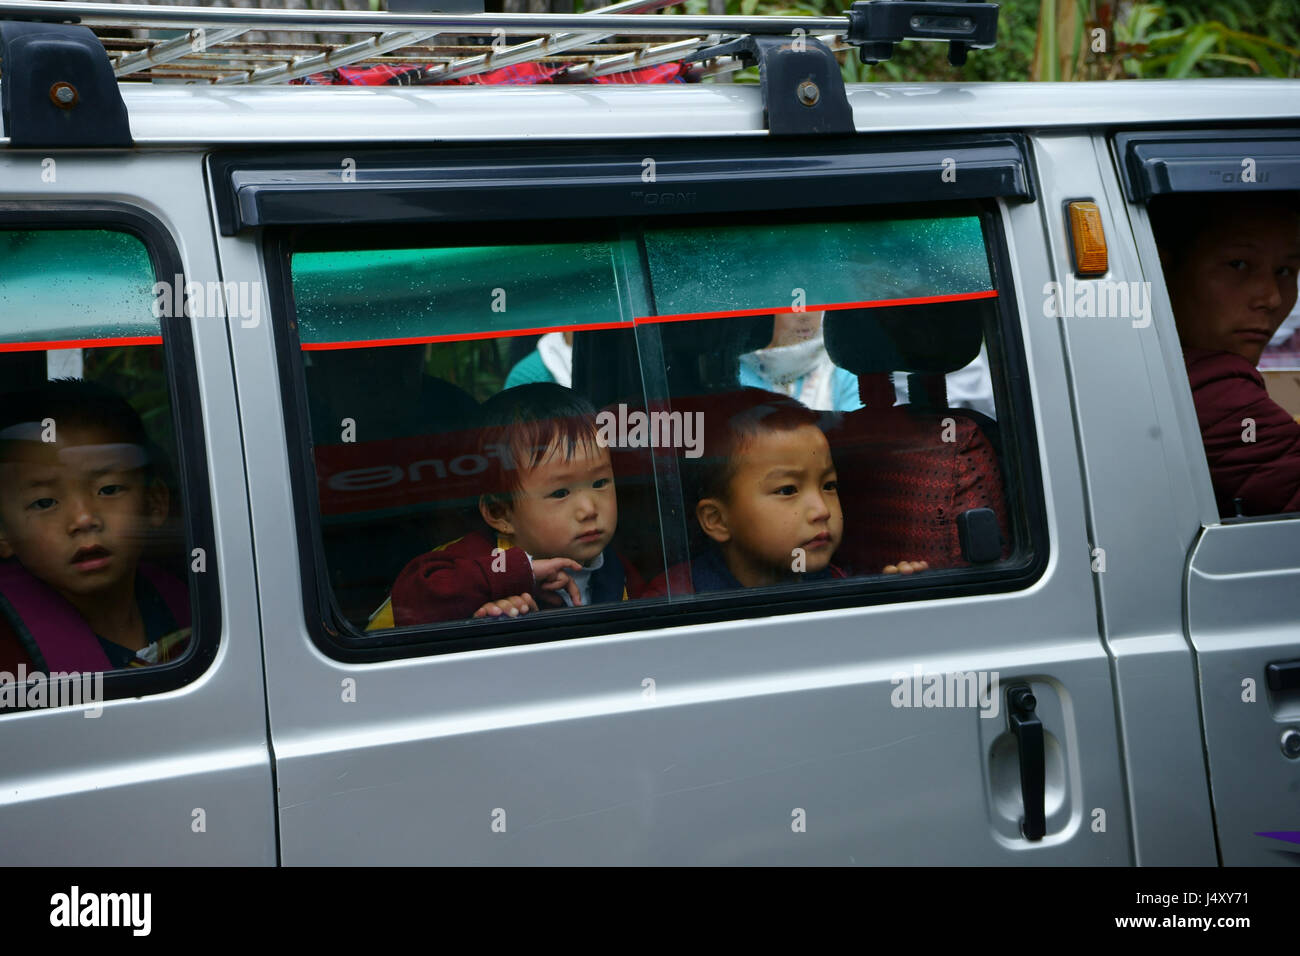 children's van